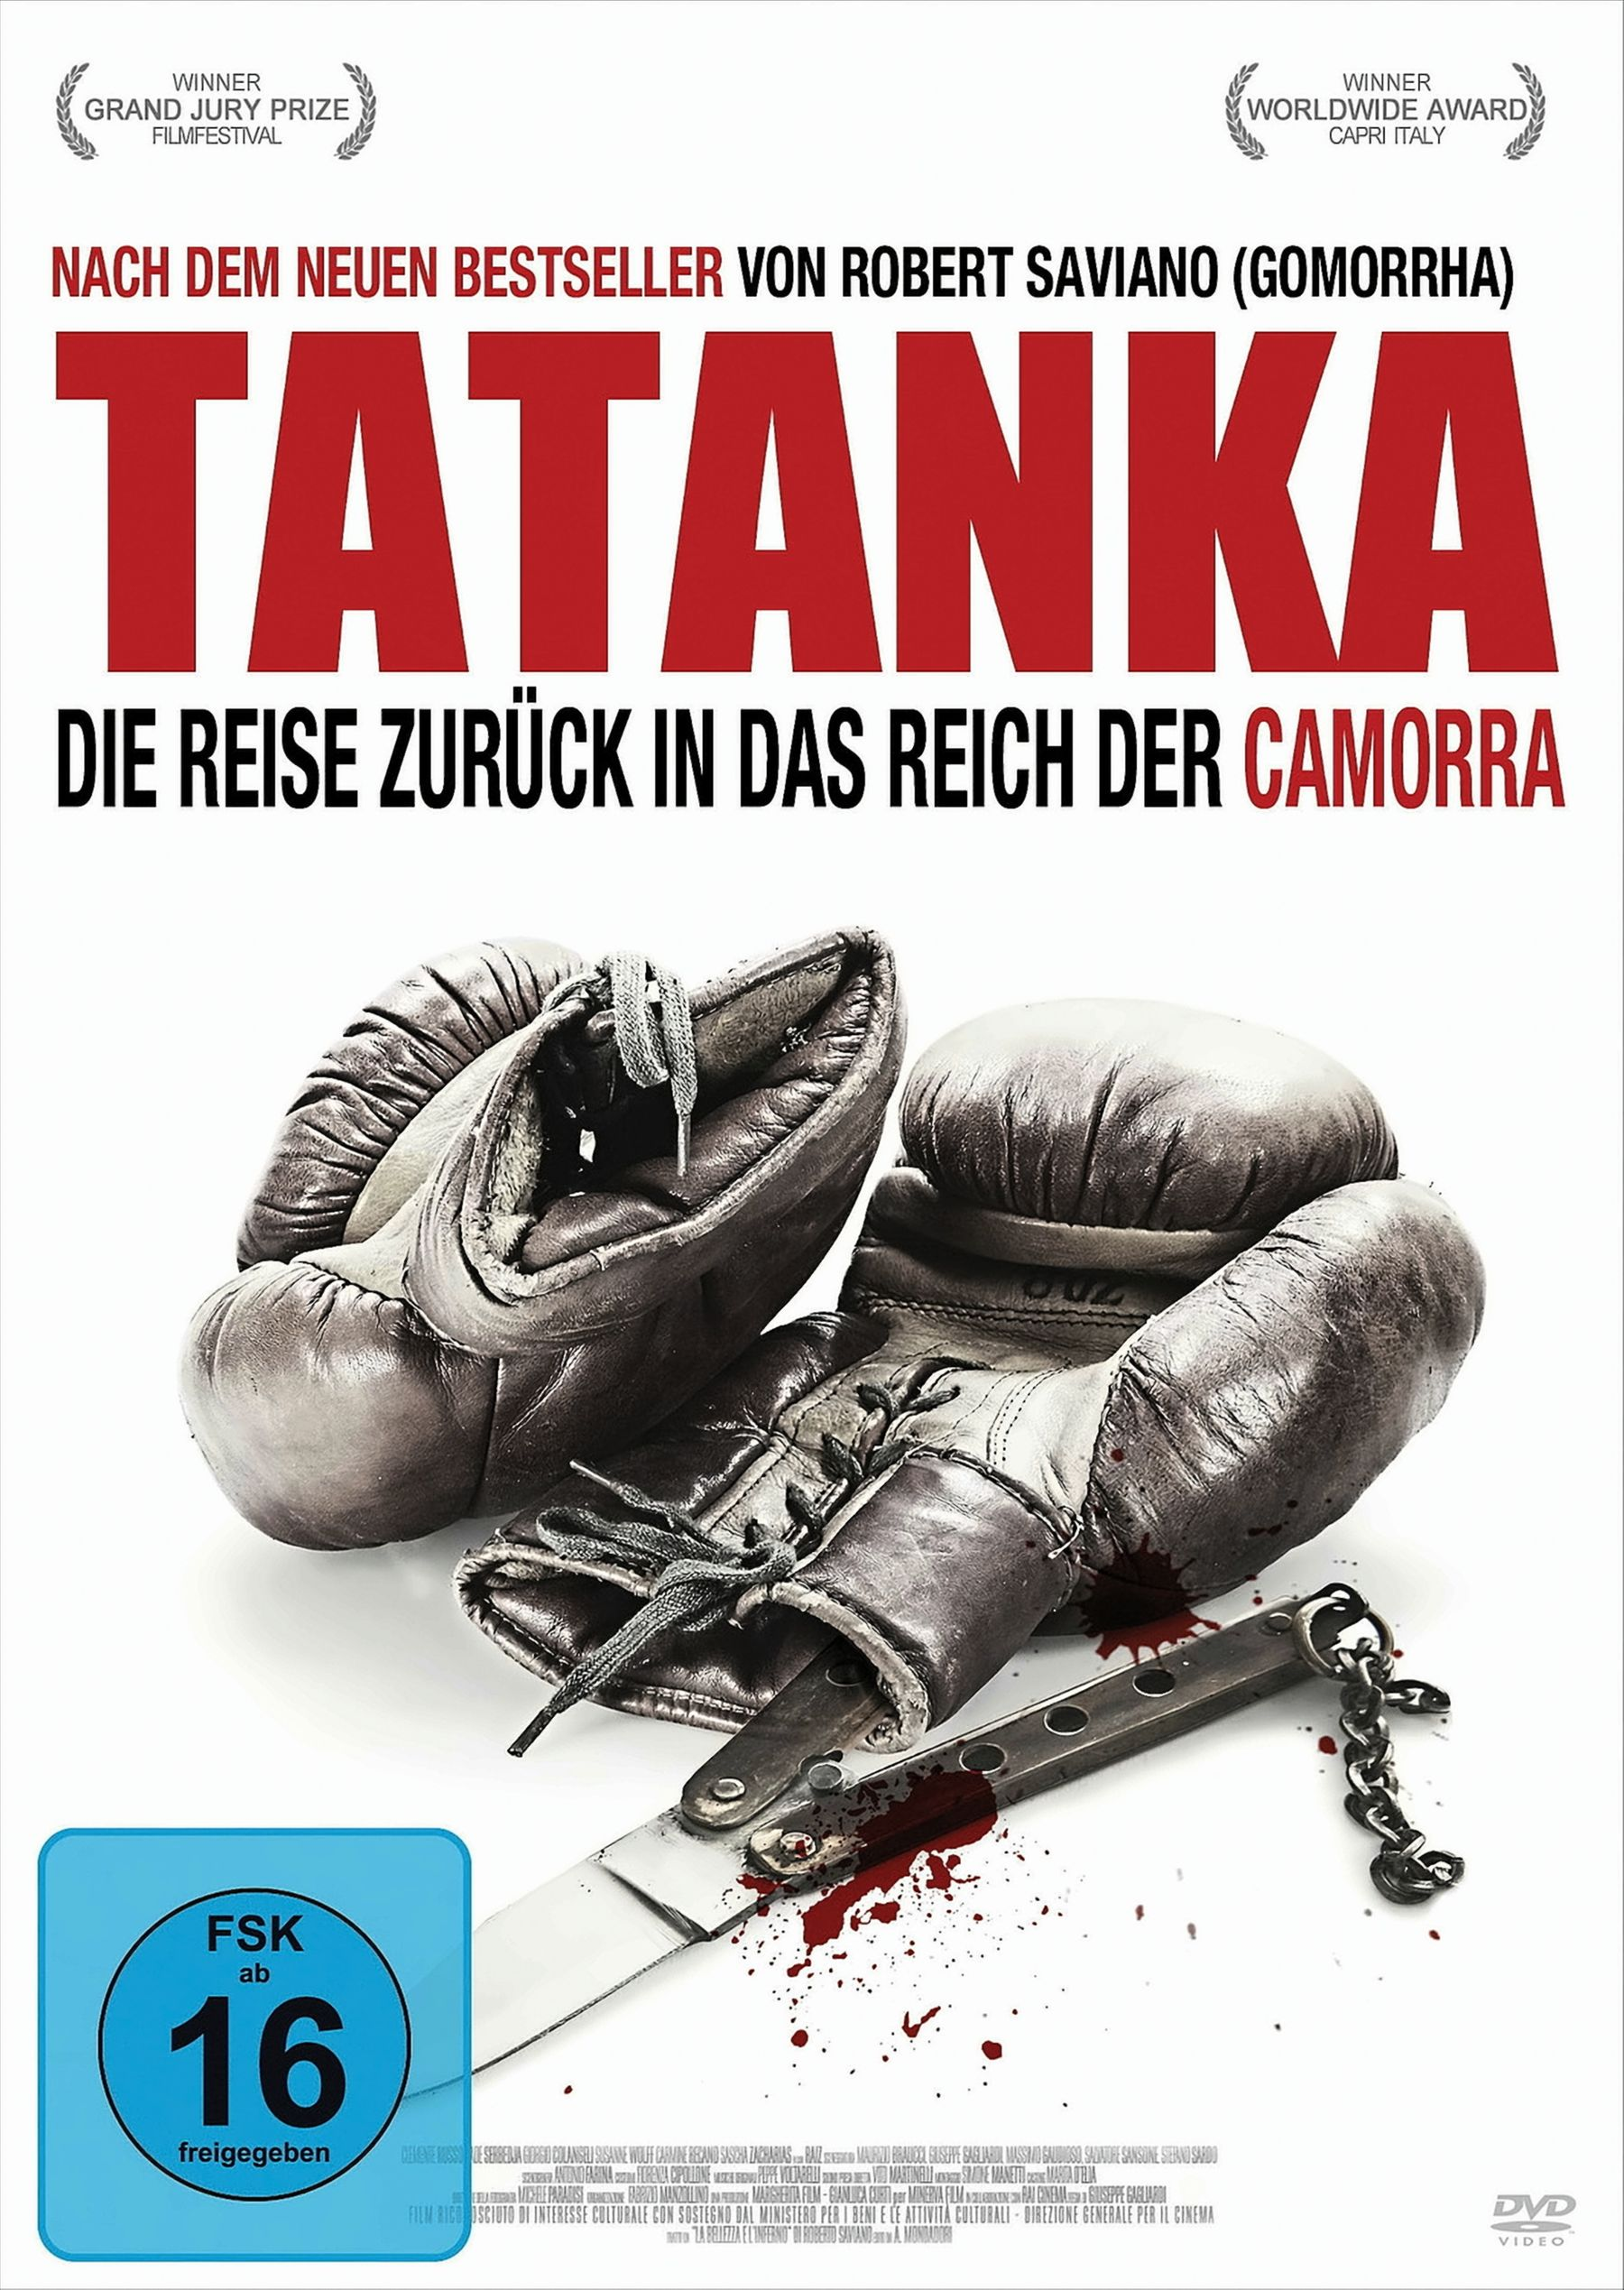 Camorra - DVD Tatanka Reise in der zurück das Reich Die